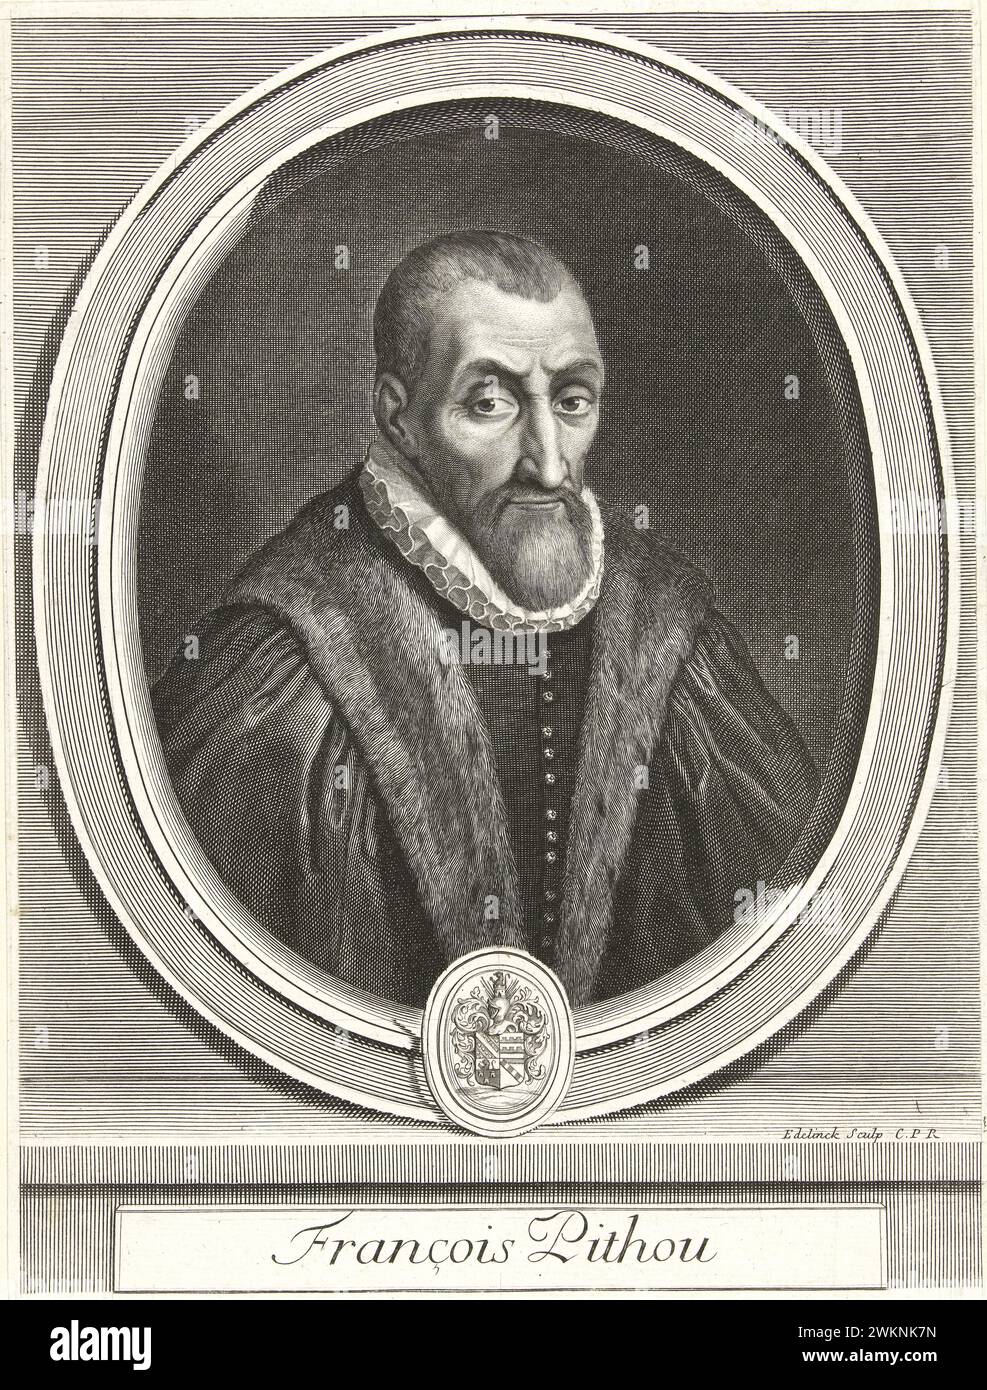 1585 c. , FRANKREICH : der italienische Jurist, Historiker und Schriftsteller Francois PITHOU ( 1543–1621), junger Mann von Pierre Pithou ( 1543–1596 ). Porträt von Gerard Edelinck ( 1666 - 1707 ), publiziert 1700 v. Chr., Paris . - GESCHICHTE - FOTO STORICHE - HISTORIAN - STORICO - SCRITTORE - WRITER - LETTERATURA - LITERATUR - giureconsulto - GIURISTA - LEGGE - LAY - nobili - nobiltà francese - französischer Adel - FRANCIA - INCISIONE - GRAVUR - ILLUSTRATION - ILLUSTRAZIONE - Kragen - Collare - Colletto - GORGIERA - pizzo - Spitze - Bart - barba - Fell - Pelliccia - Archivio GBB Stockfoto